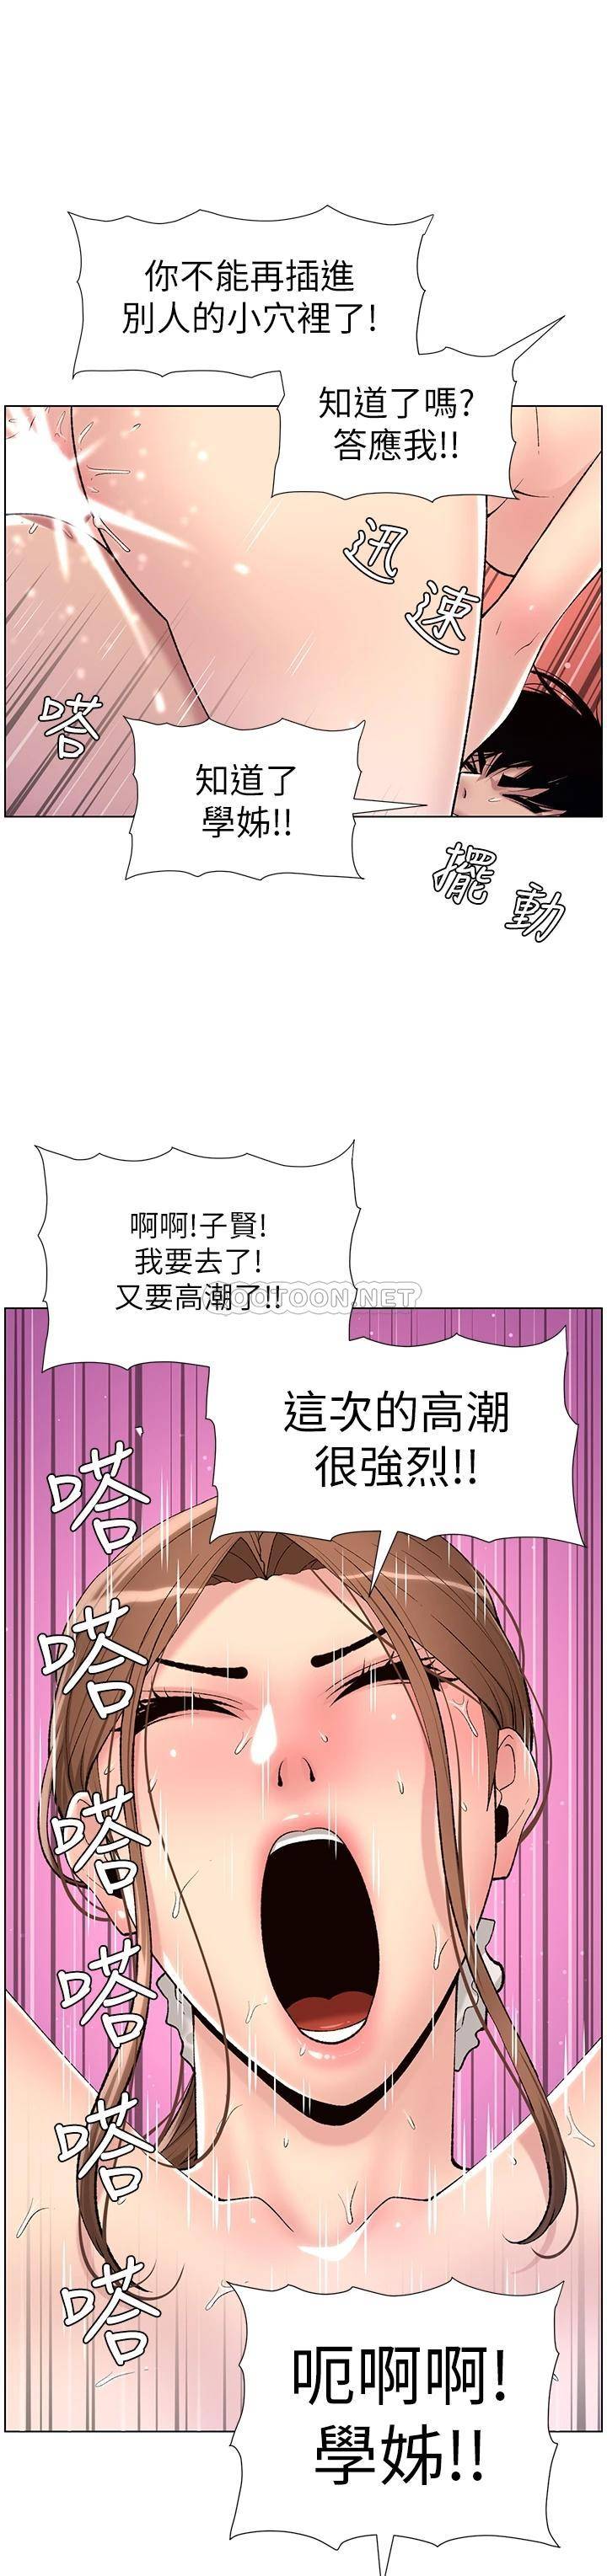 韩国污漫画 帝王App 第16话 你要当我的按摩棒吗? 29